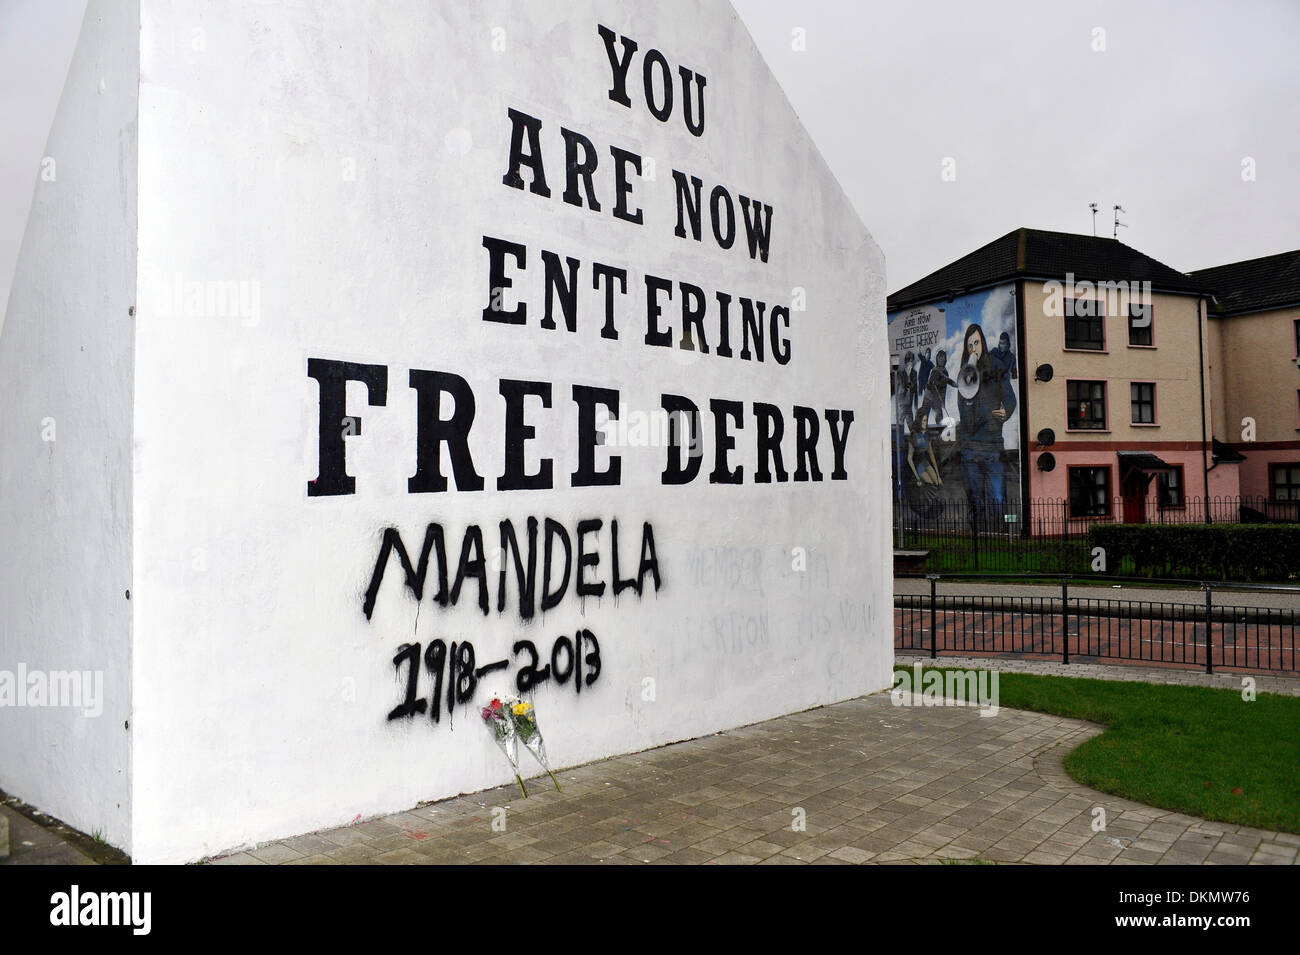 Londonderry, en Irlande du Nord - 07 mars 2014 - Hommage à Free Derry Corner, Bogside, après la mort de Nelson Mandela le 5 décembre. Crédit : George Sweeney/Alamy Live News Banque D'Images